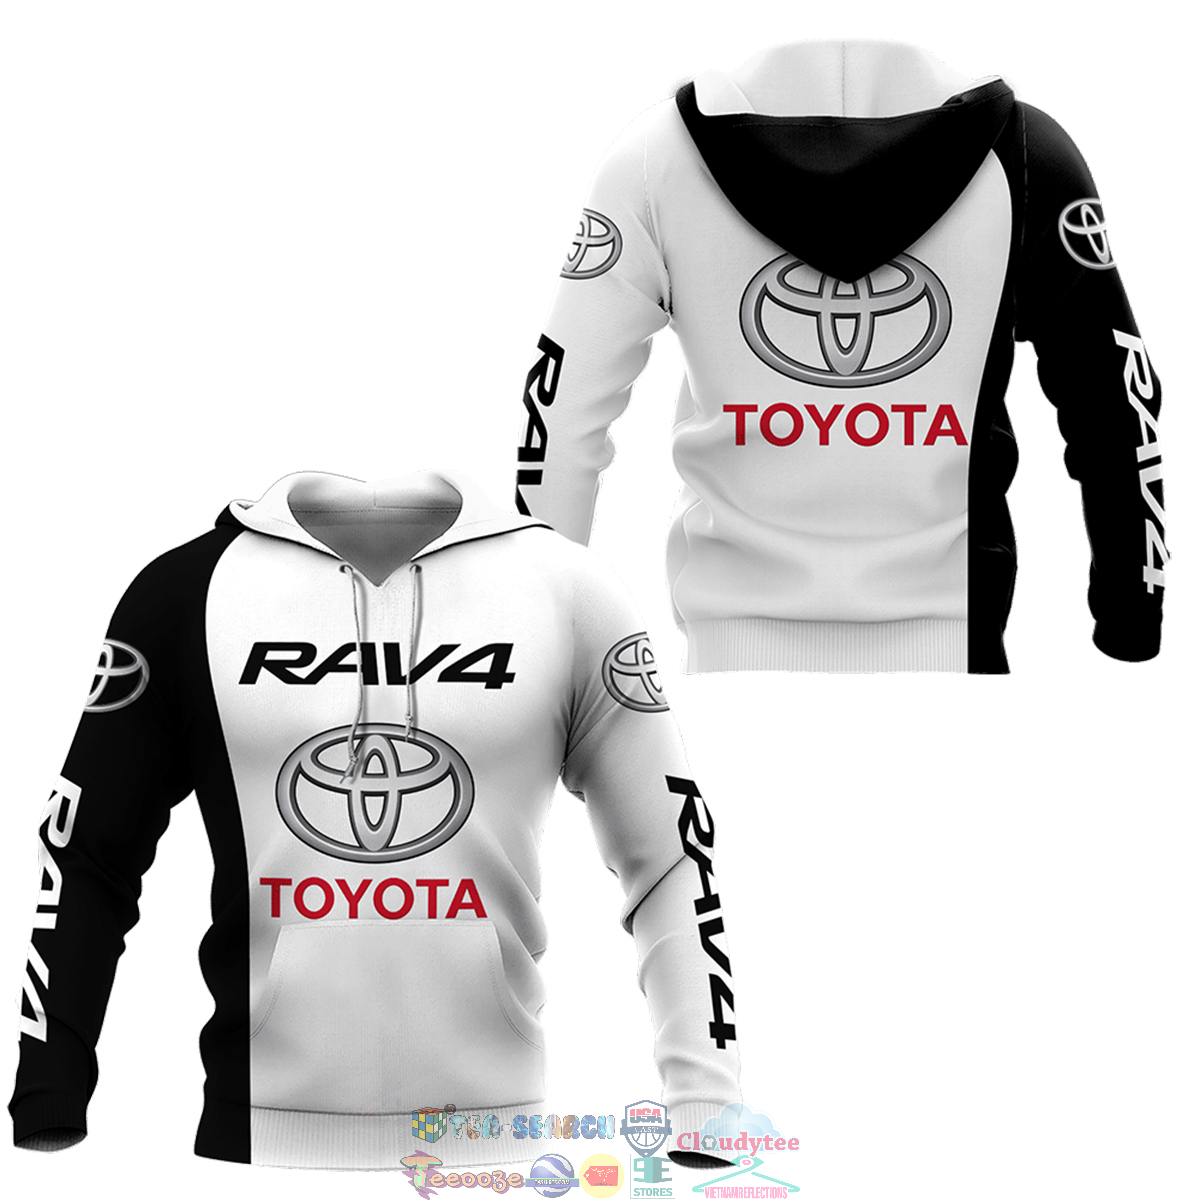 Toyota Rav4 ver 1 hoodie and t-shirt